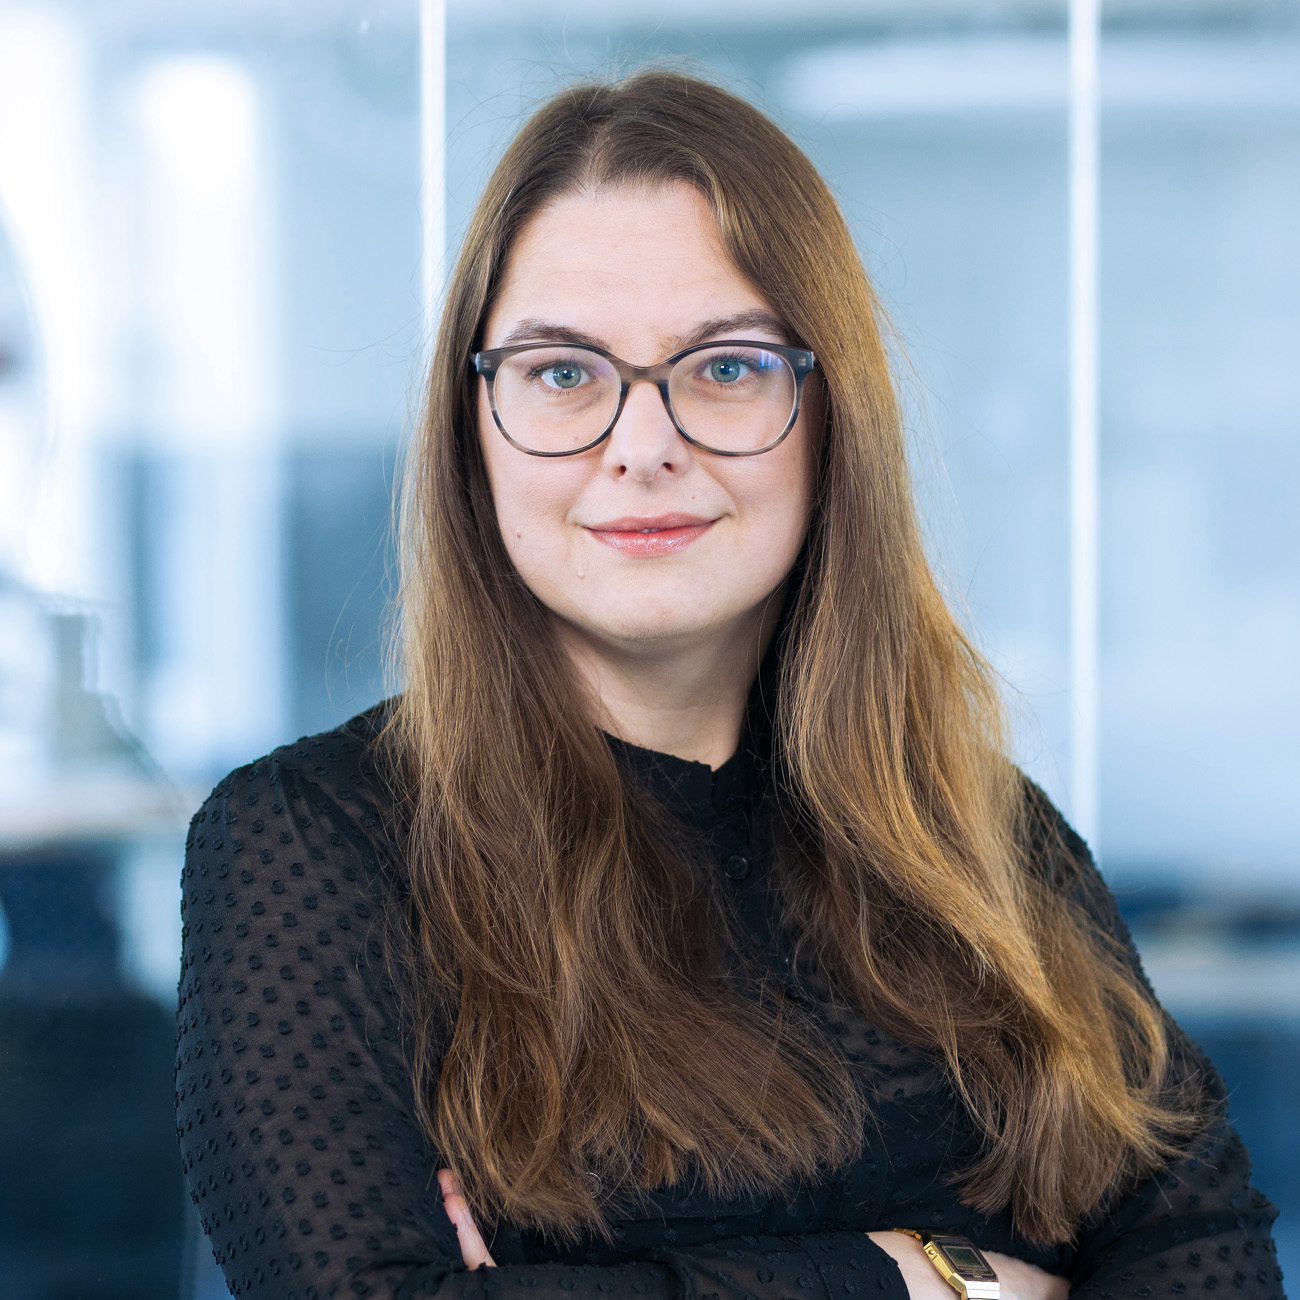 Portätfoto von Lisa Schönfelder, Head of Finance beim DigitalService